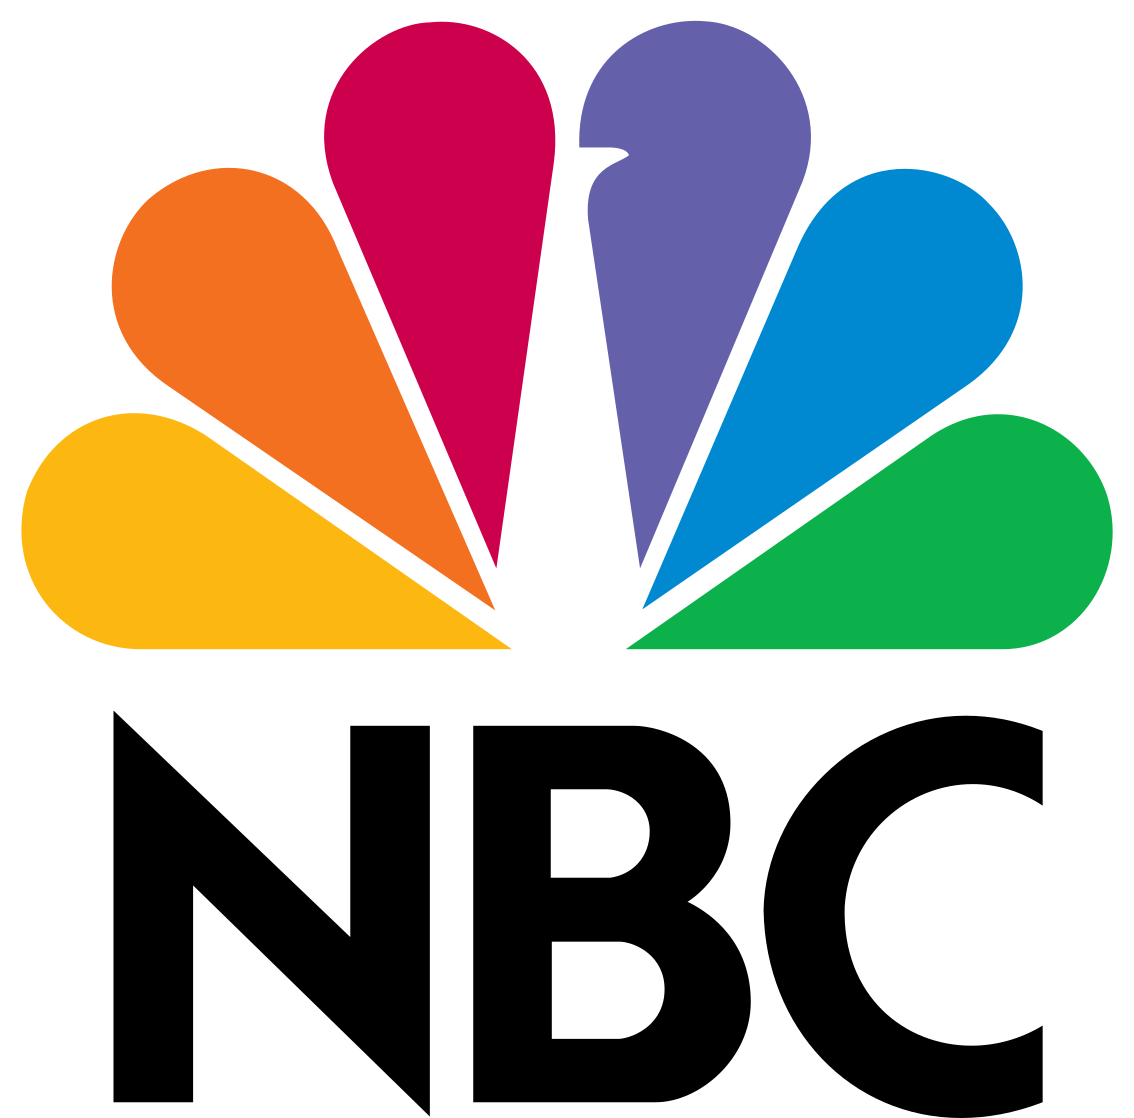 NBC_logo.svg.png__PID:d858c7ee-4664-4dd8-95a6-db6aaef168c6